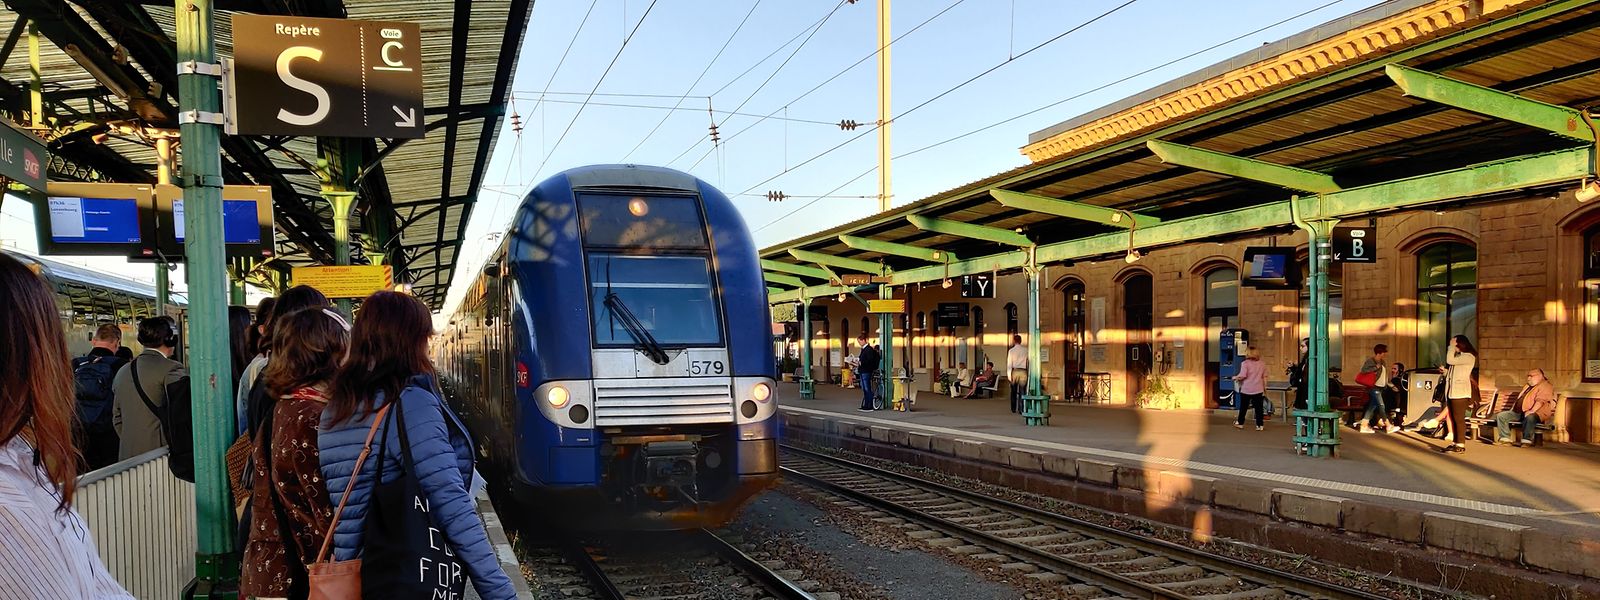 Les horaires des TER du sillon lorrain sont décalés de quelques minutes dans les gares côté français depuis ce mercredi 2 novembre.